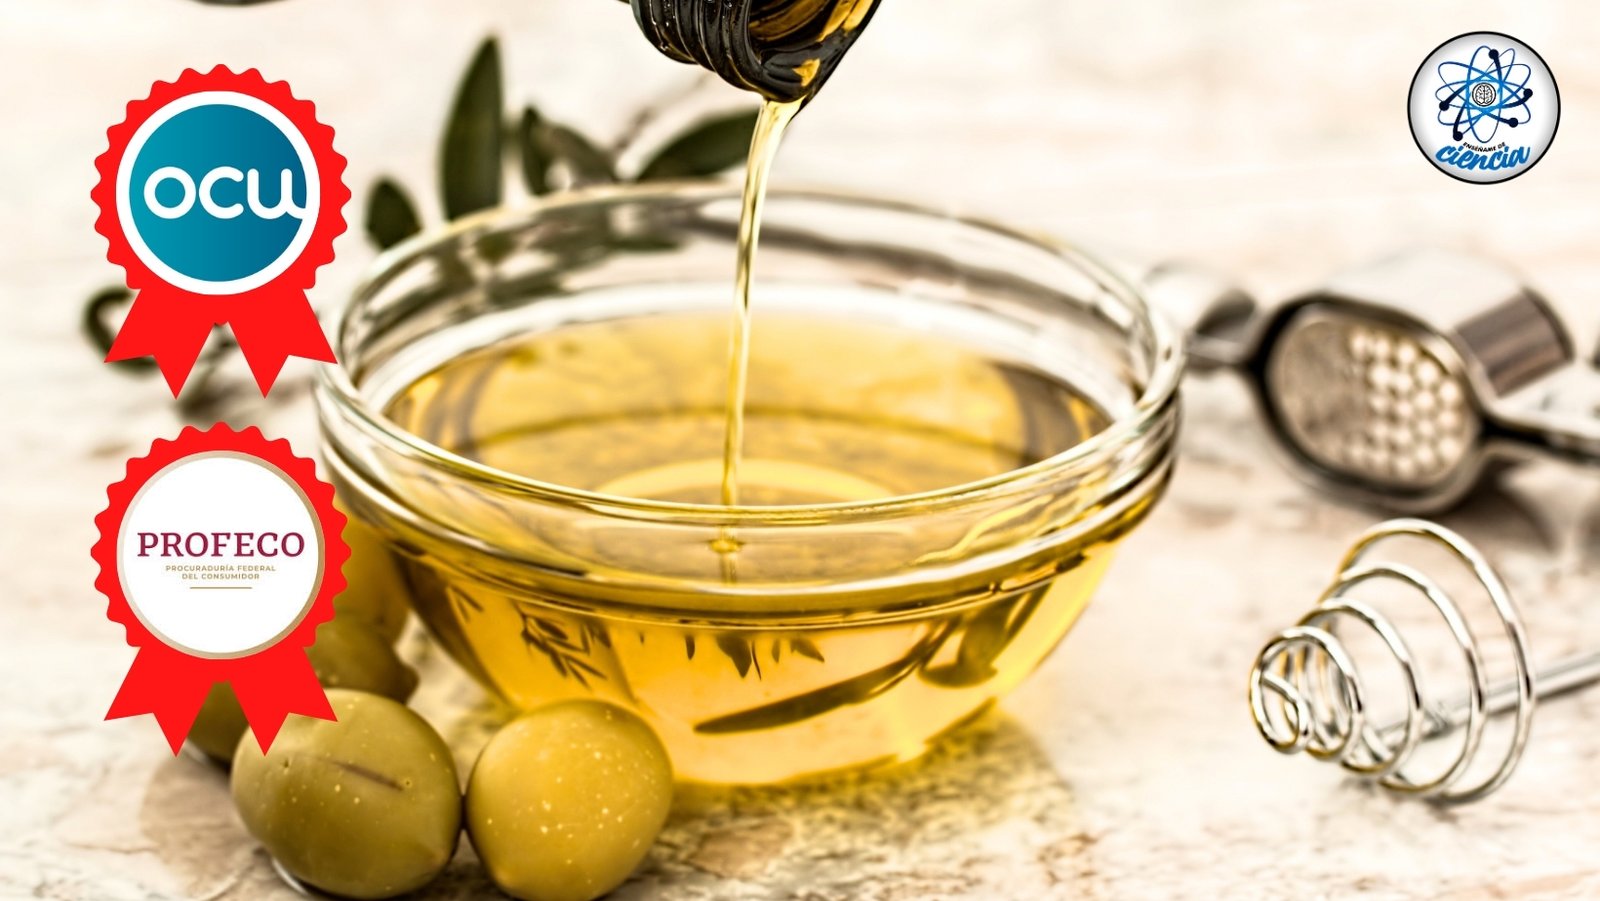 Las 27 mejores marcas de aceite de oliva certificadas por PROFECO y OCU